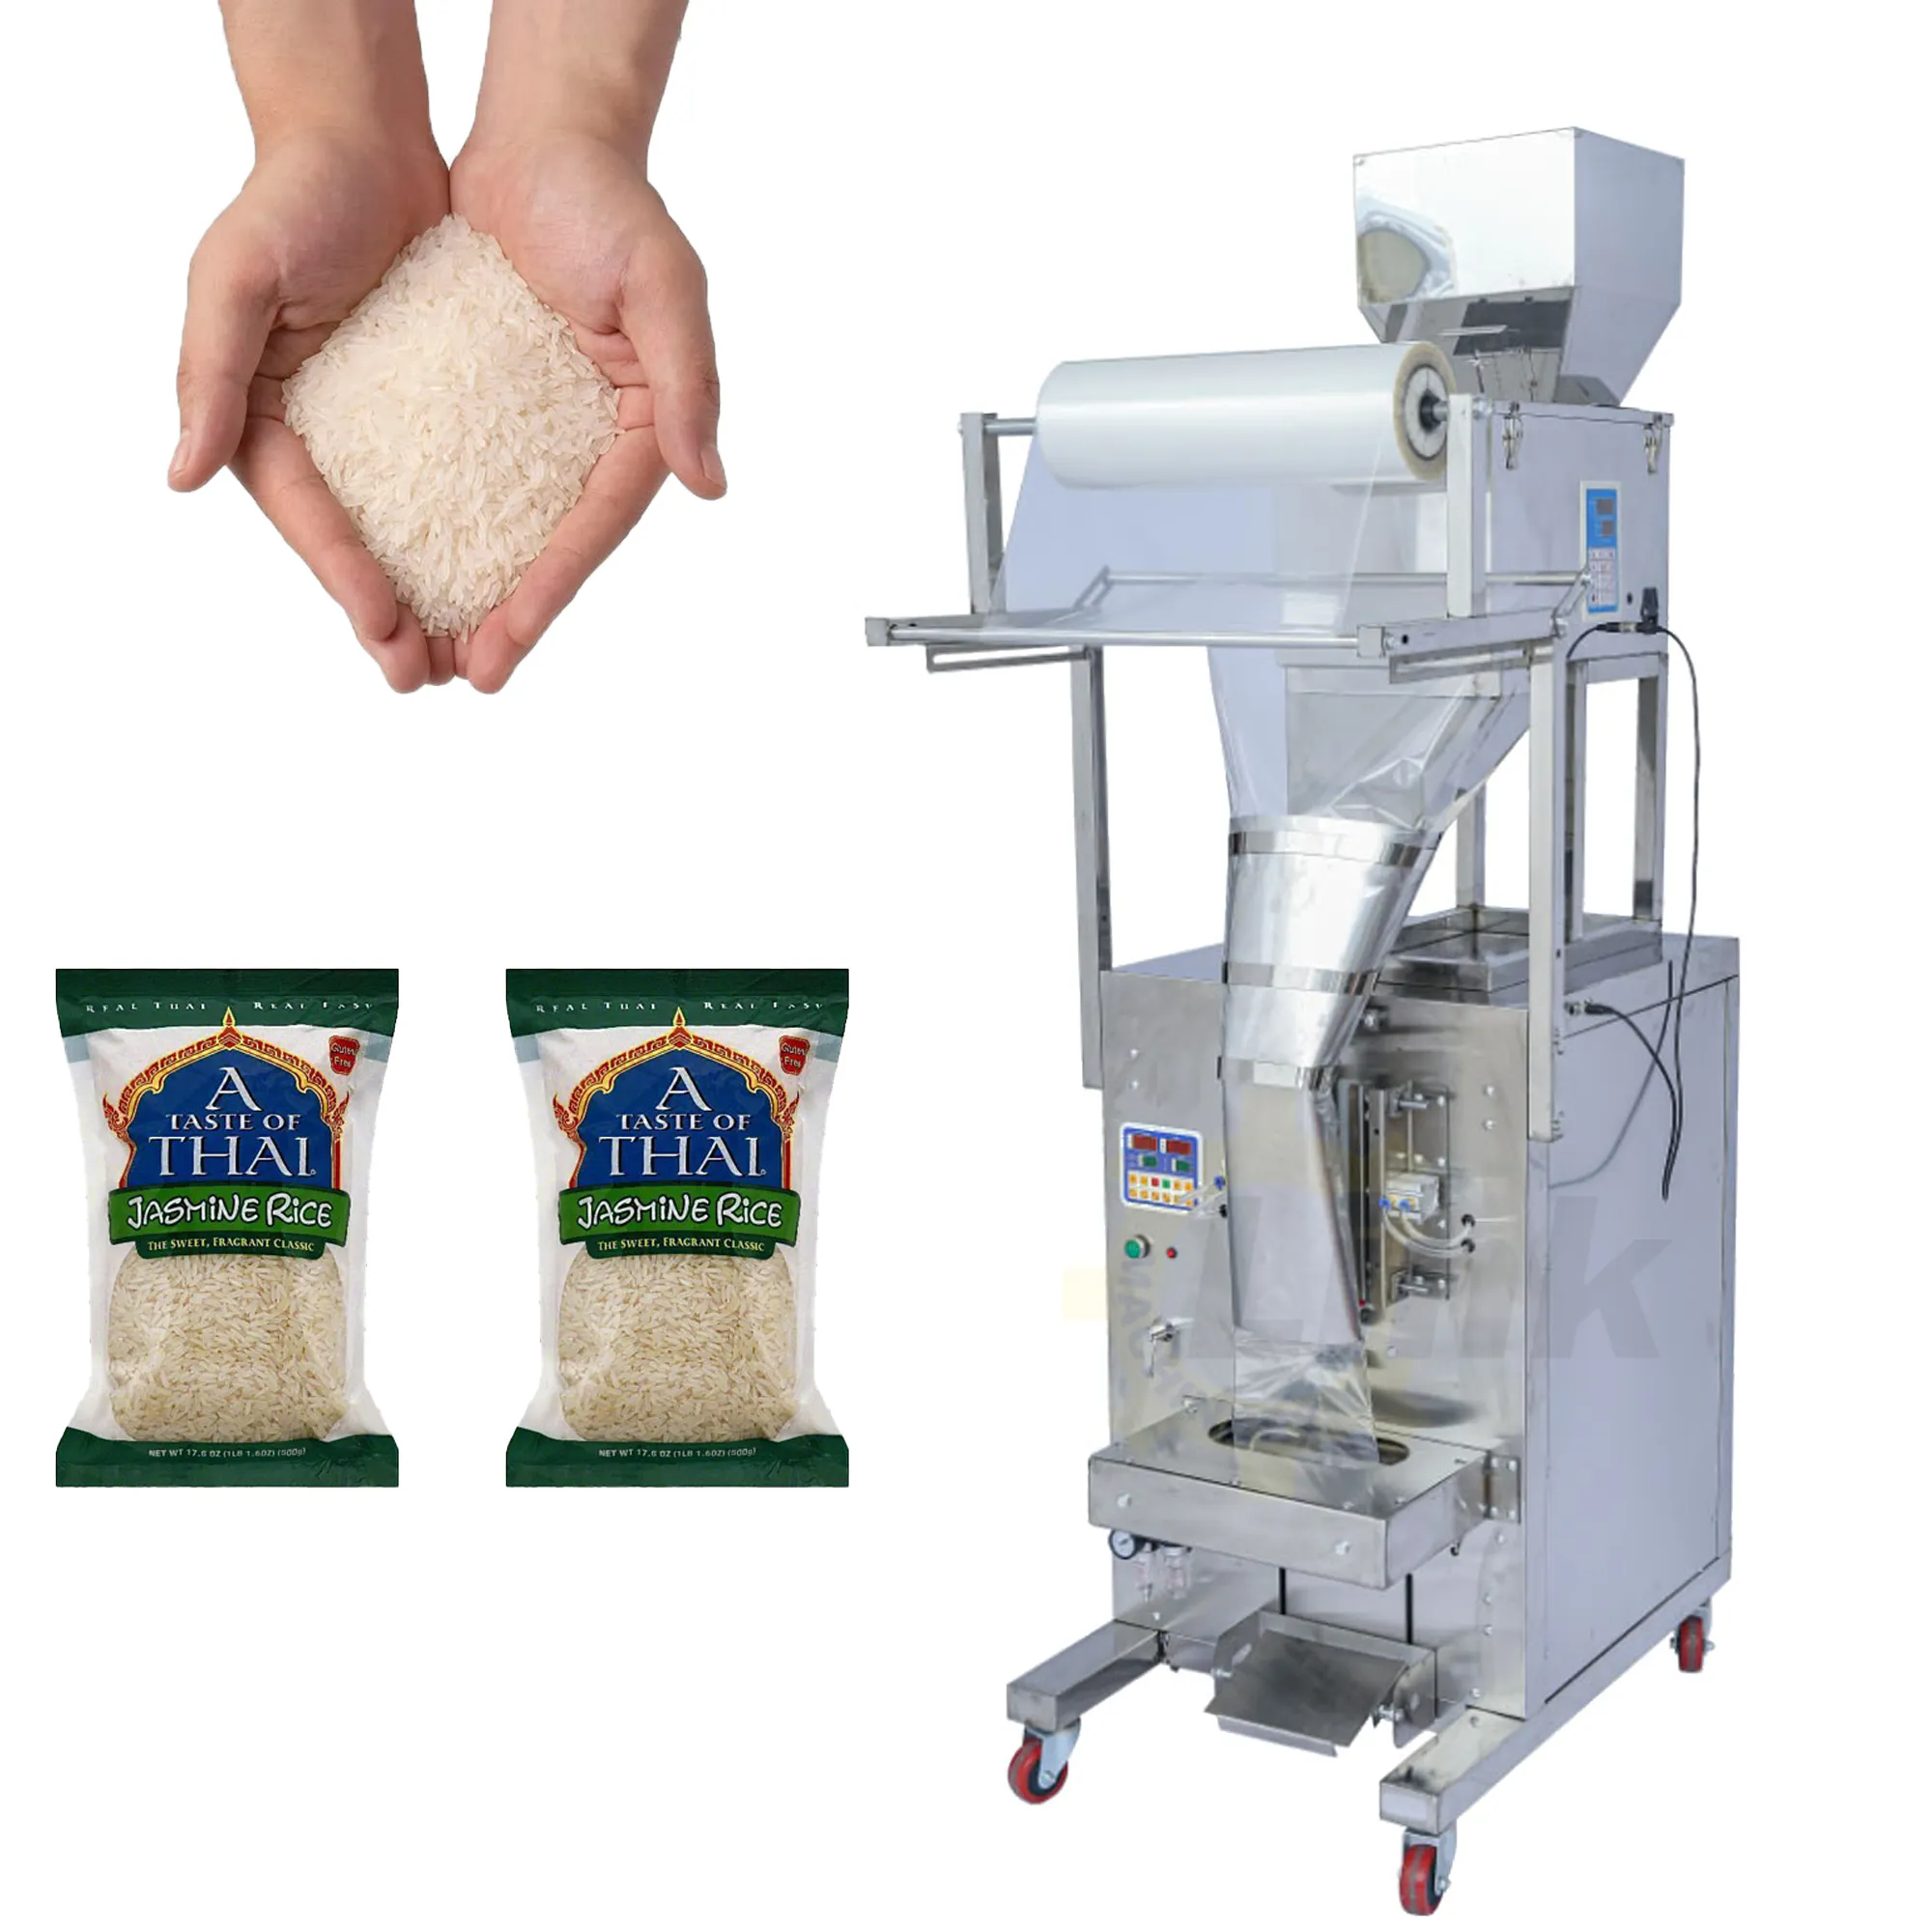 التلقائي الرأسي الأرز السكر الملح آلة التعبئة الأرز الحبوب الفول الحبوب آلة تعبئة الأكياس 1 كجم 5 كجم ماكينة تعبئة السكر